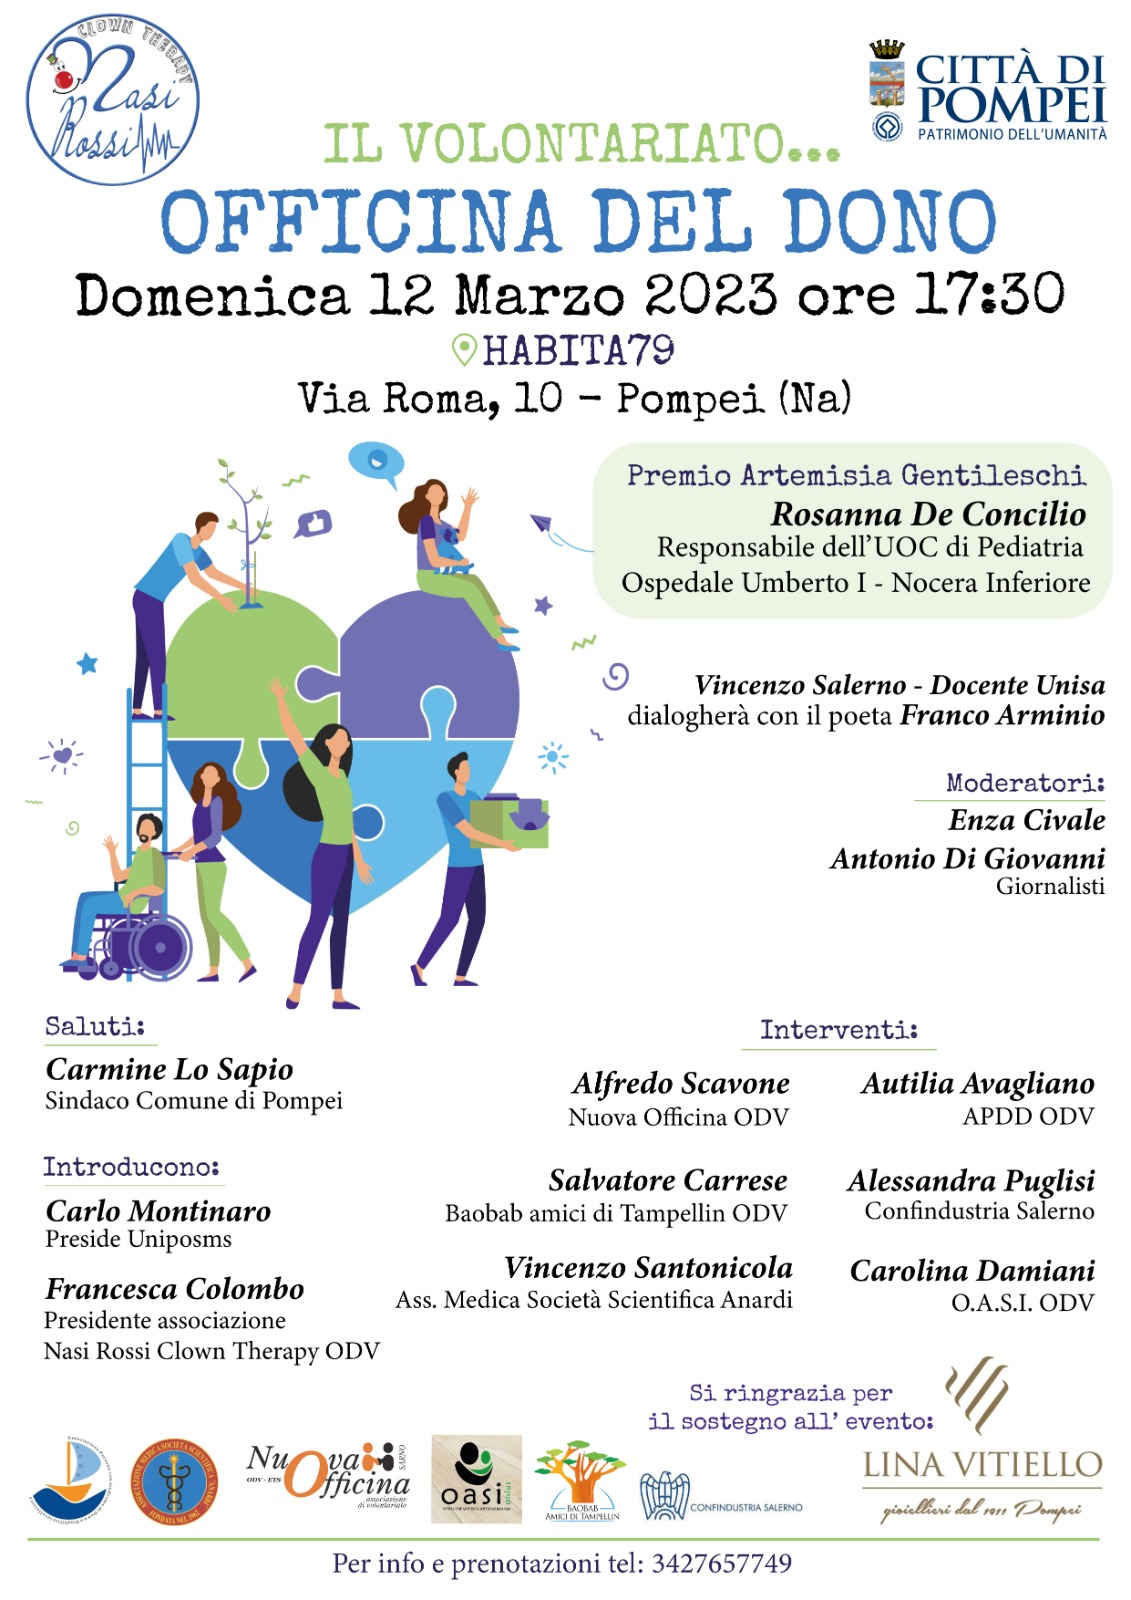 Pompei: Nasi Rossi Clown Therapy “Il volontariato…officina del dono”, evento con Associazioni